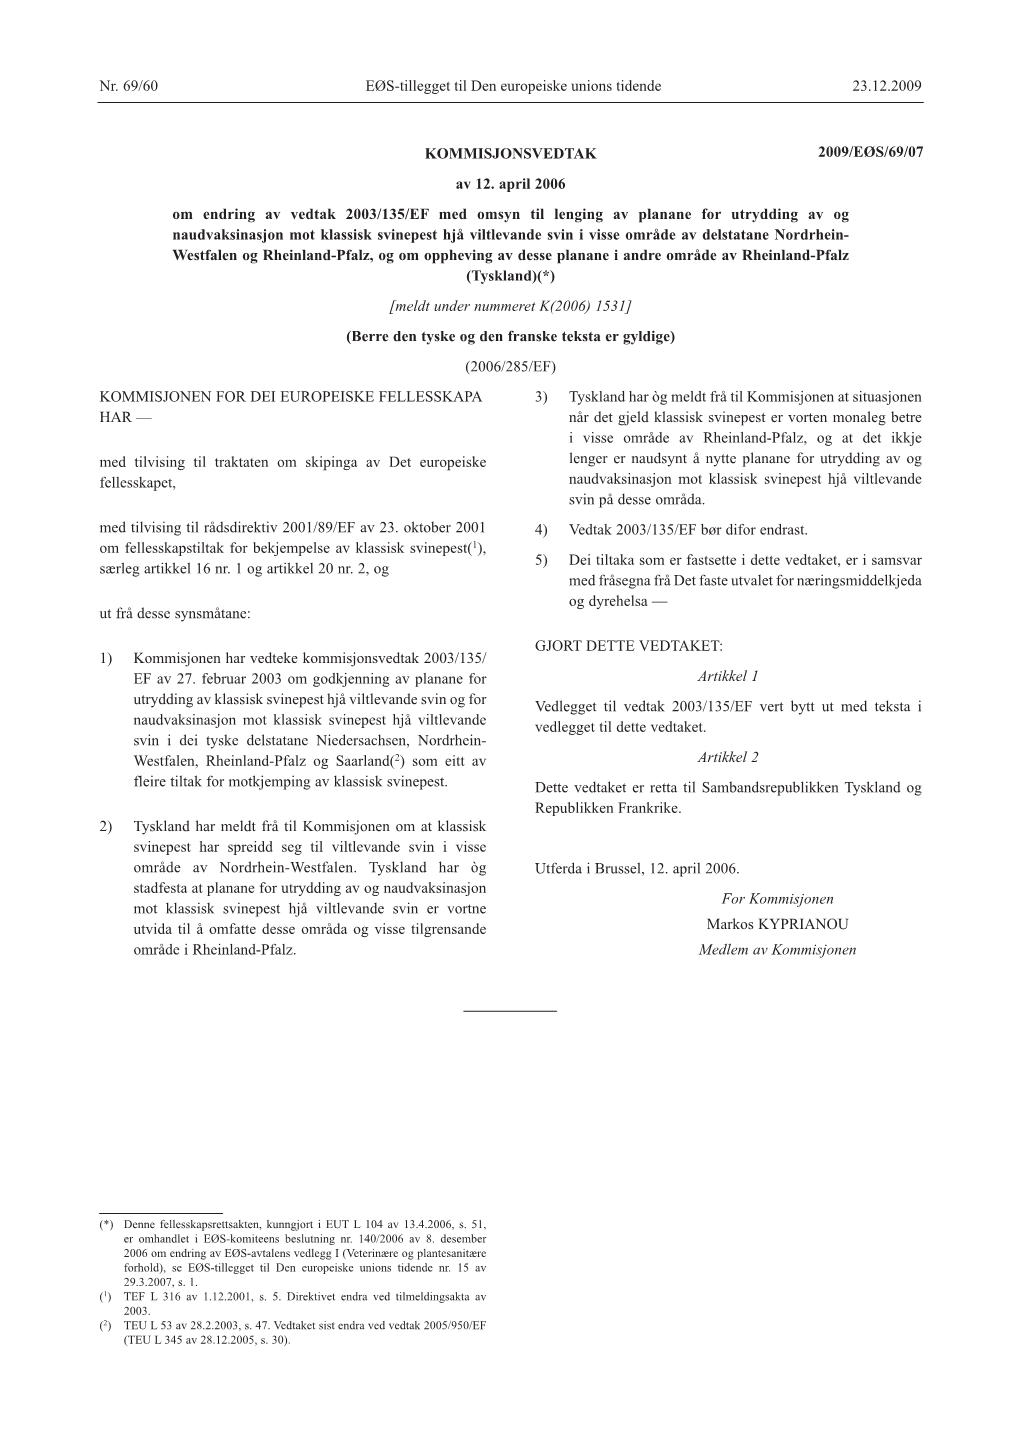 Nr. 69/60 23.12.2009 EØS-Tillegget Til Den Europeiske Unions Tidende KOMMISJONEN for DEI EUROPEISKE FELLESSKAPA HAR — Med